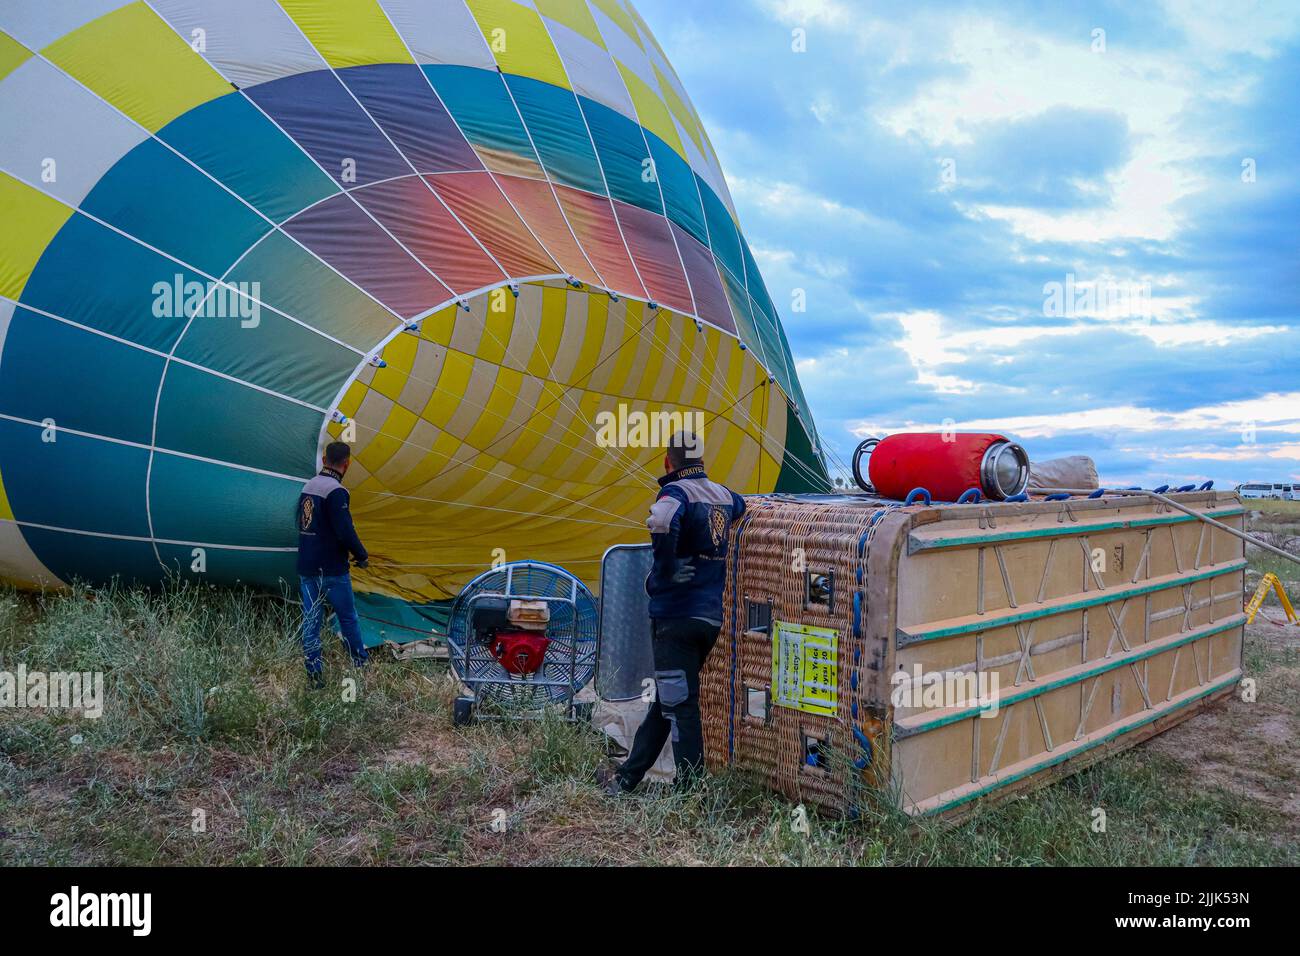 GÖREME/TURQUIE - 26 juin 2022: Les hommes gonflent le ballon pour se préparer au vol touristique. Turquie. Banque D'Images